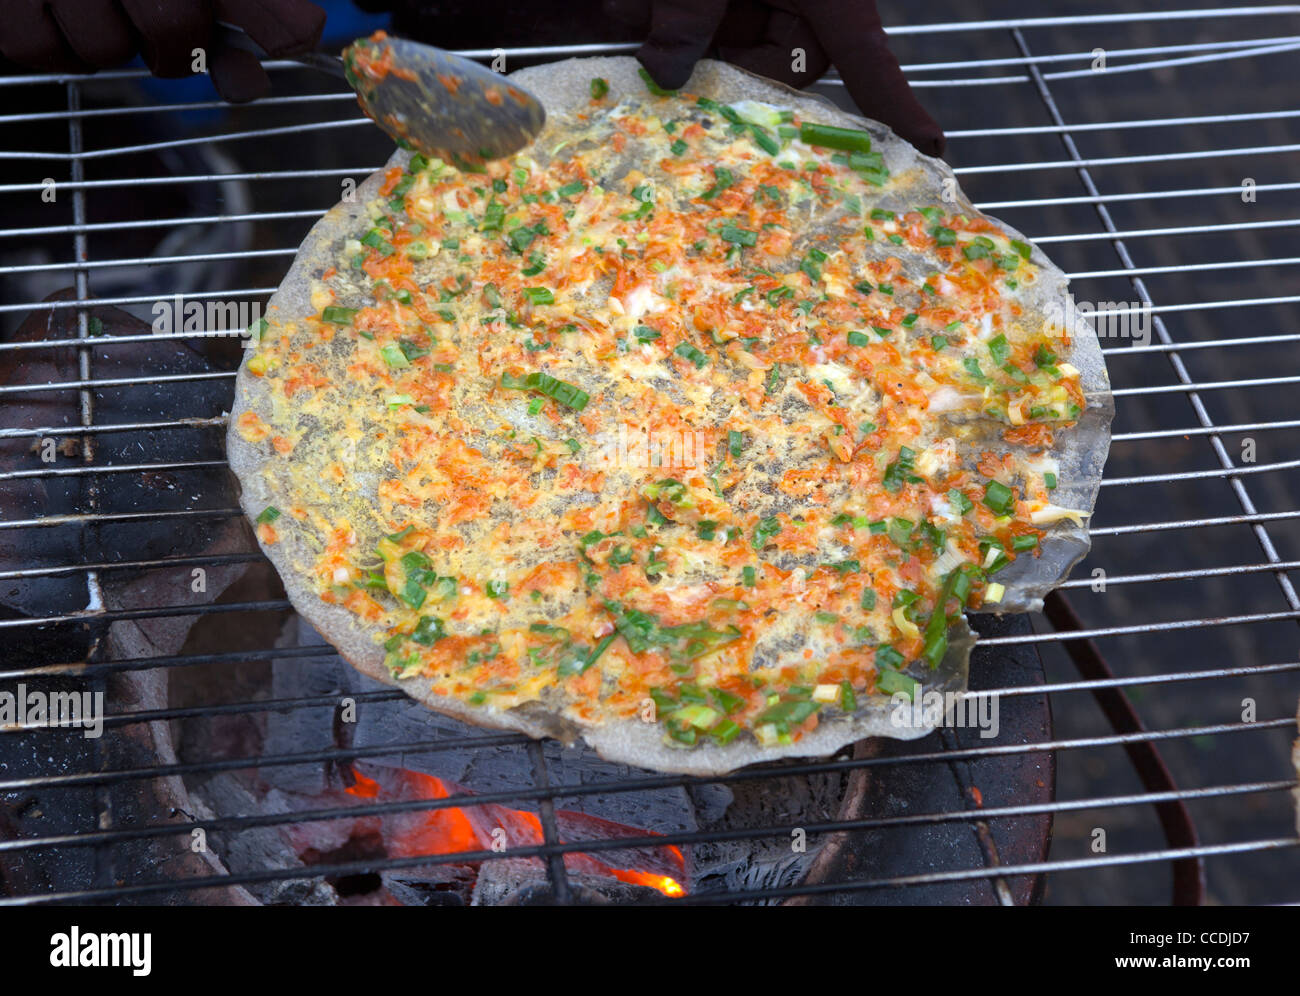 'Banh Trang Nuong' or Vietnamese Pizza at street stall in Dalat Vietnam Stock Photo